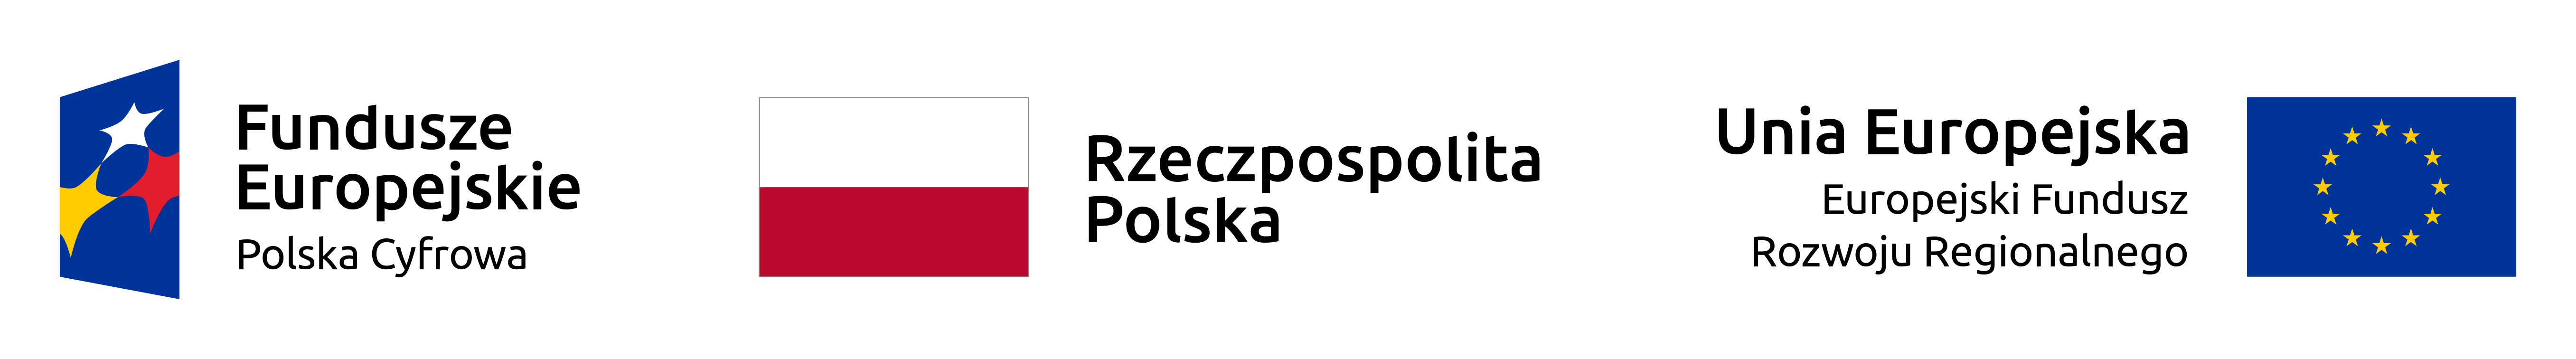 Logotypy uczestników projektu: od lewej: Fundusze Europejskie, Rzeczpopolita Polska - flaga, Unia Europejska - flaga